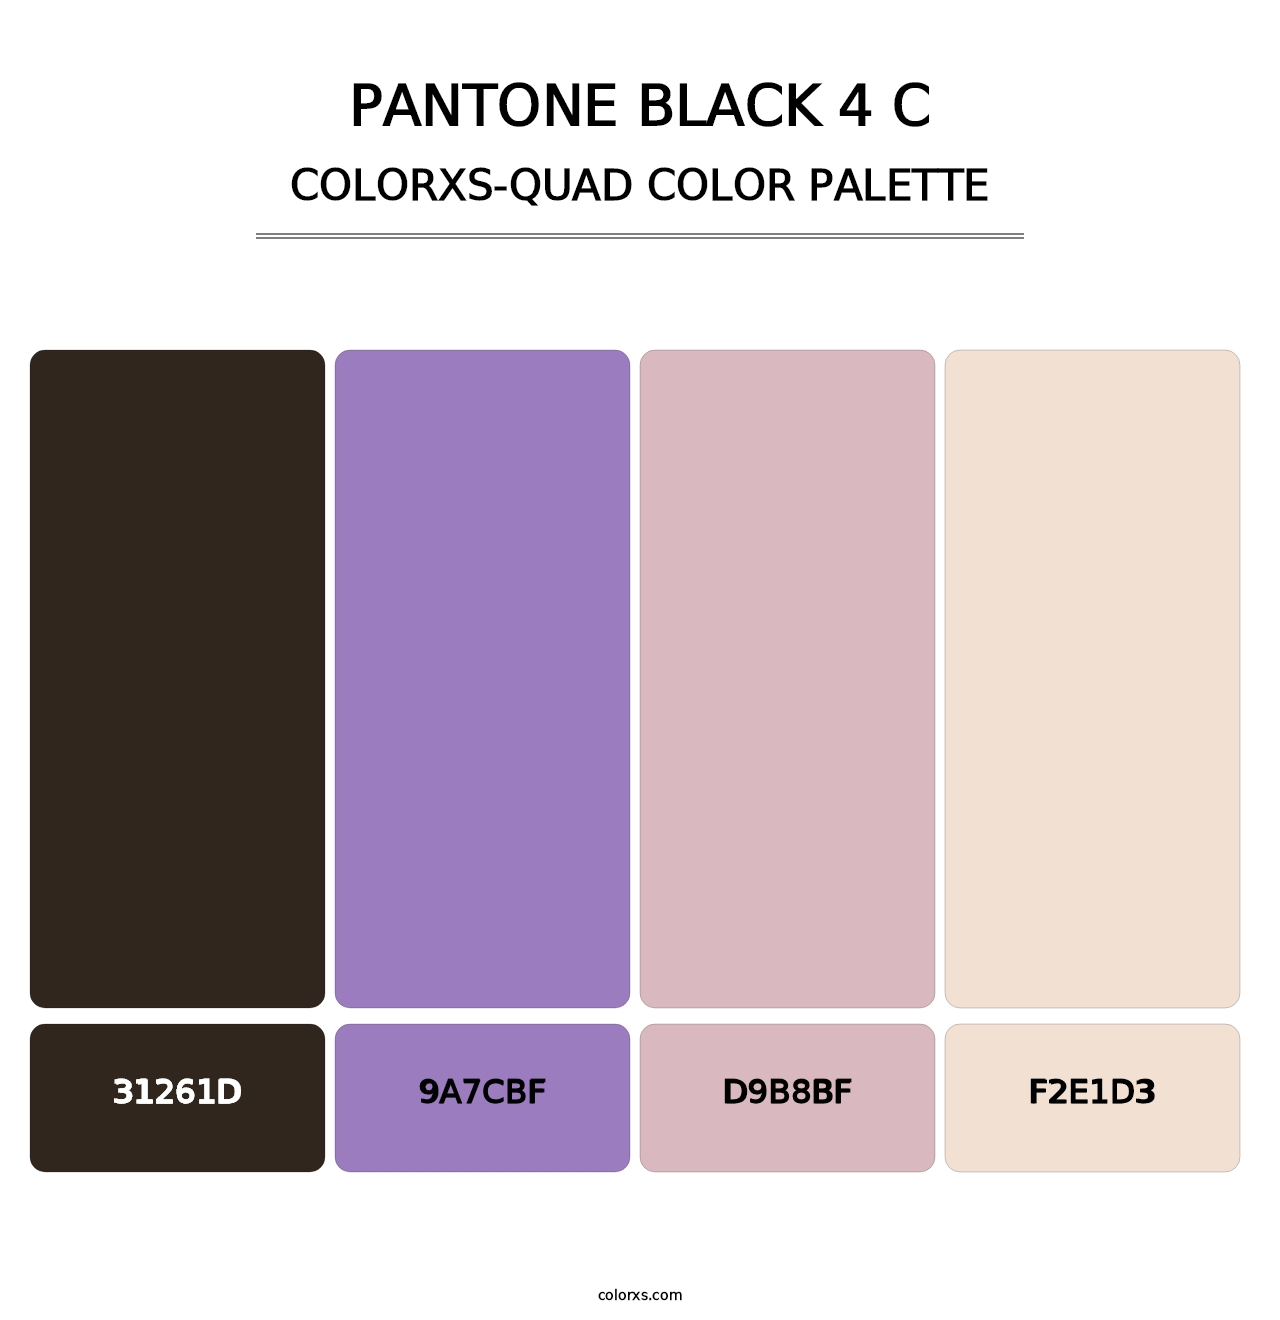 PANTONE Black 4 C - Colorxs Quad Palette